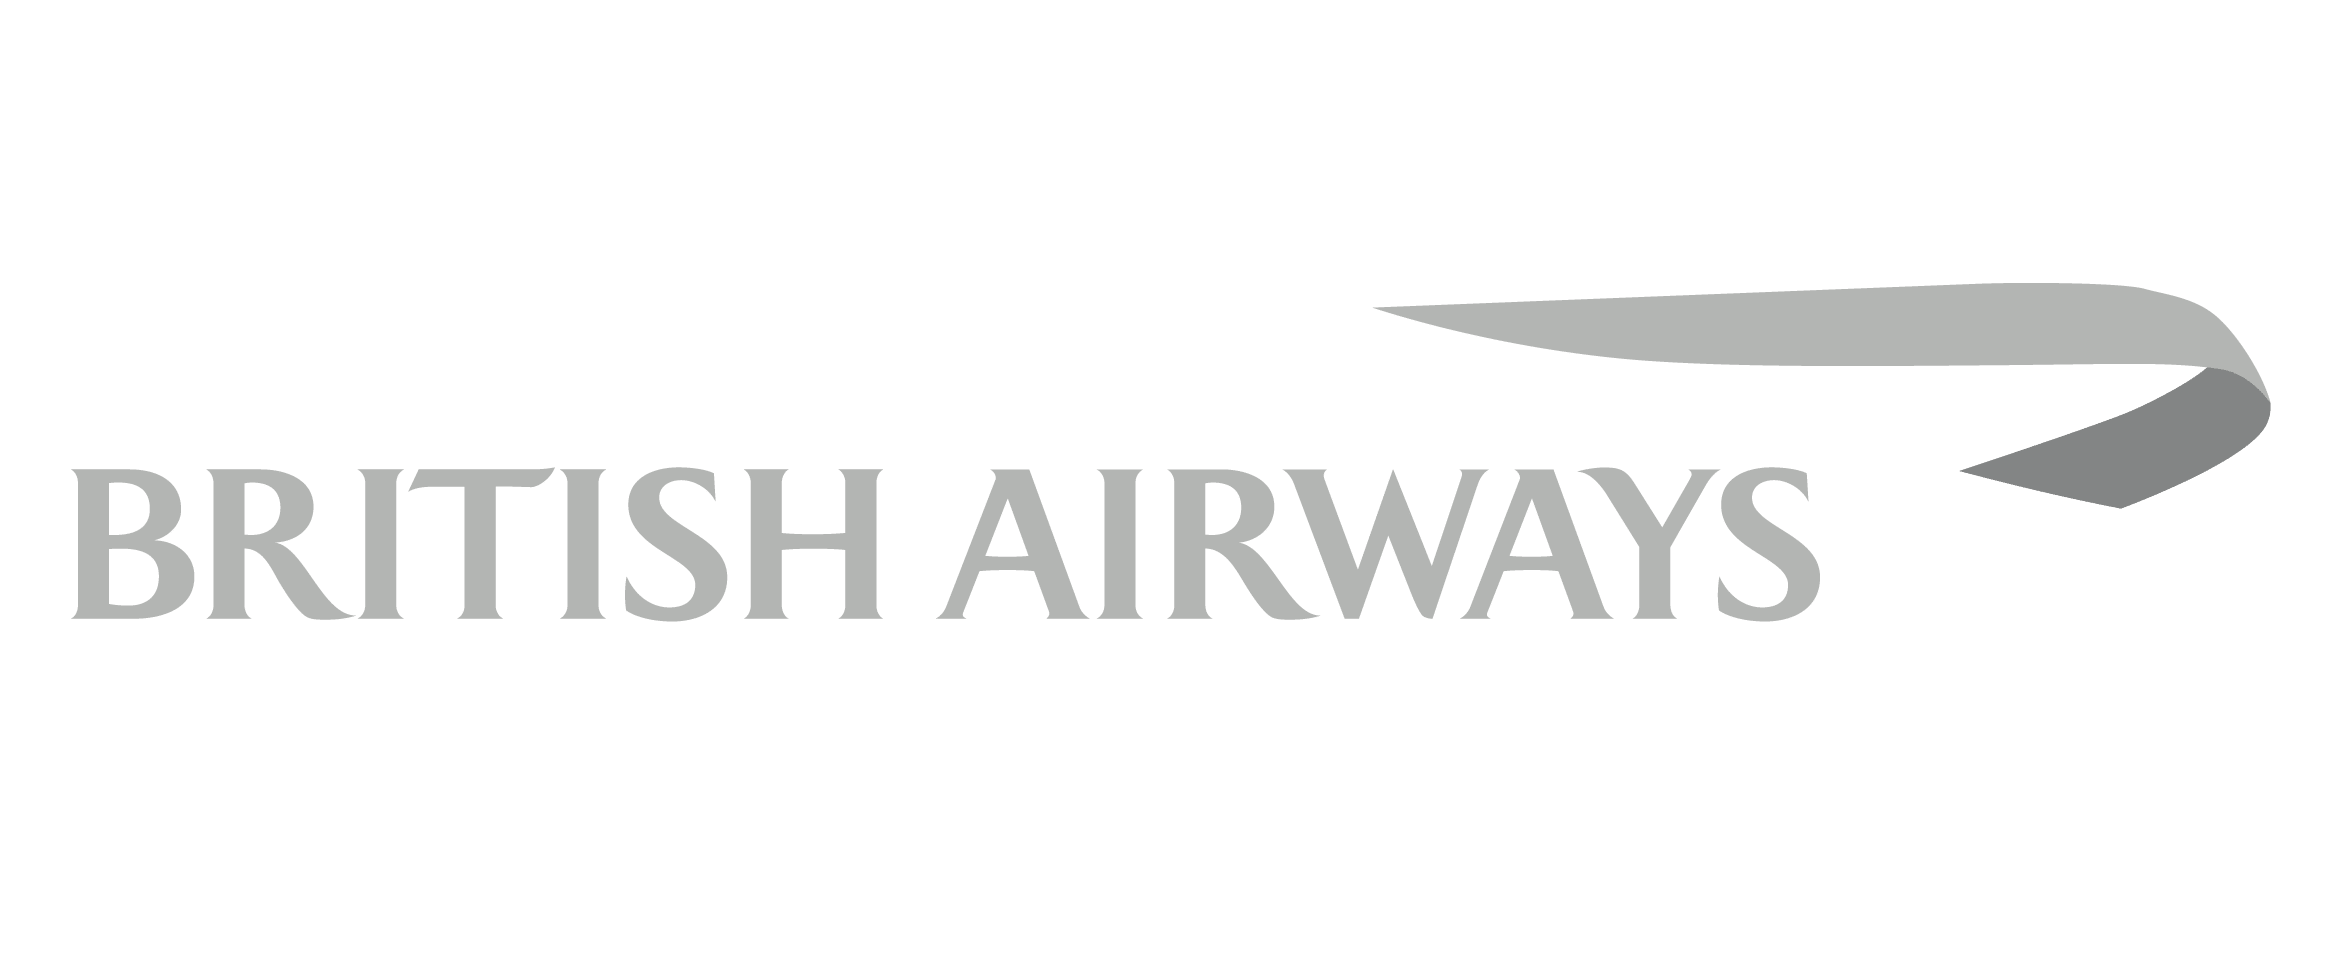 british airways logo transparent